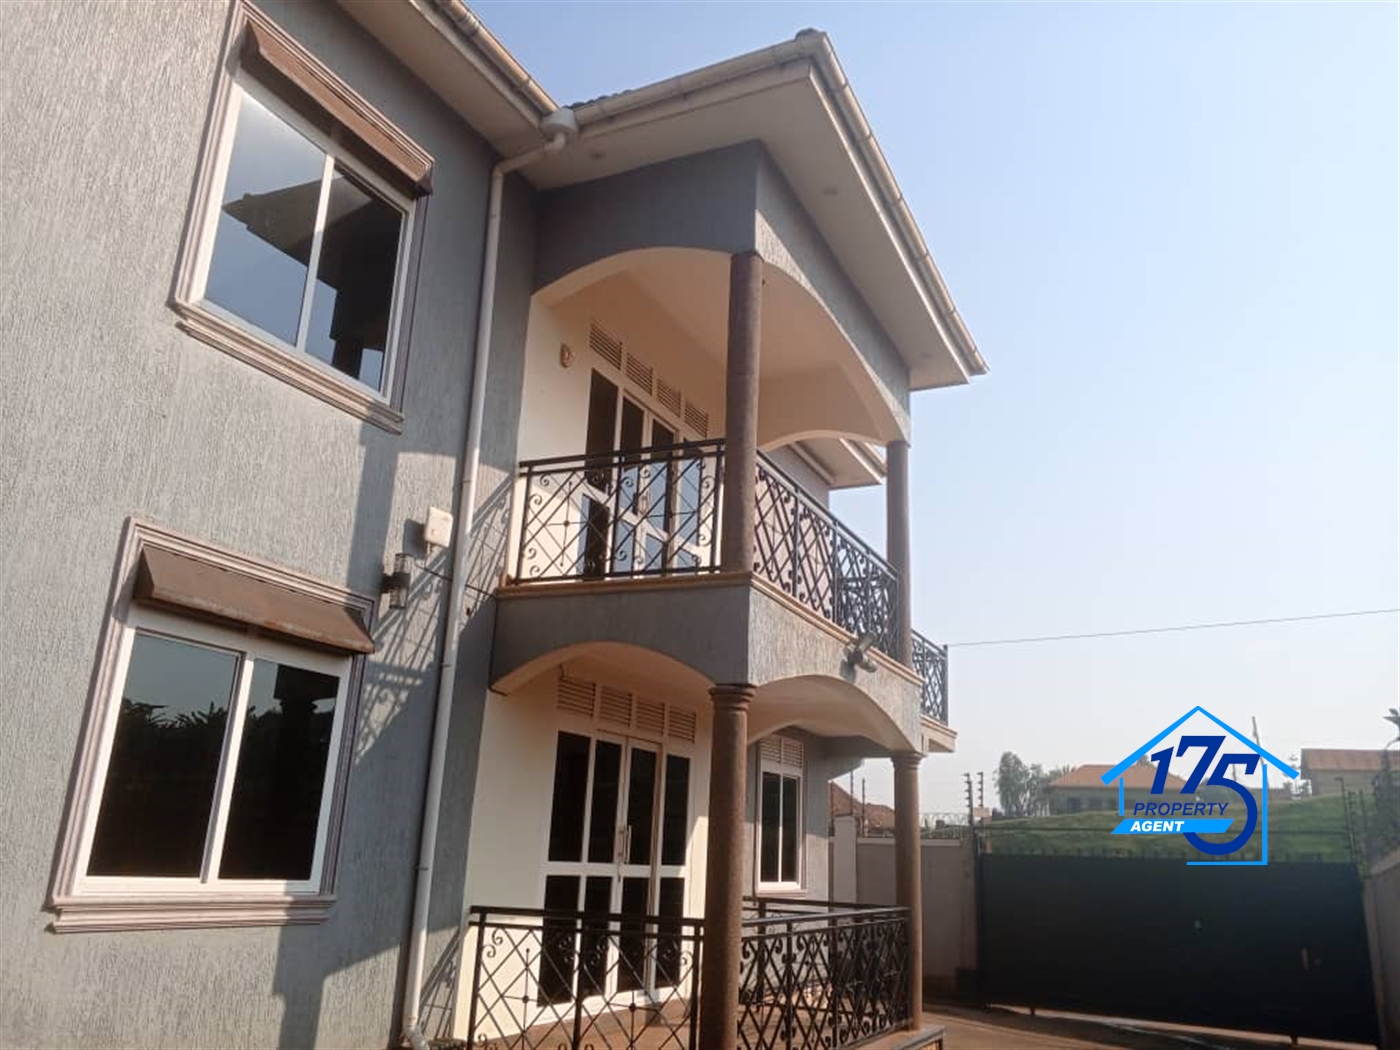 Duplex for rent in Kajjansi Kampala